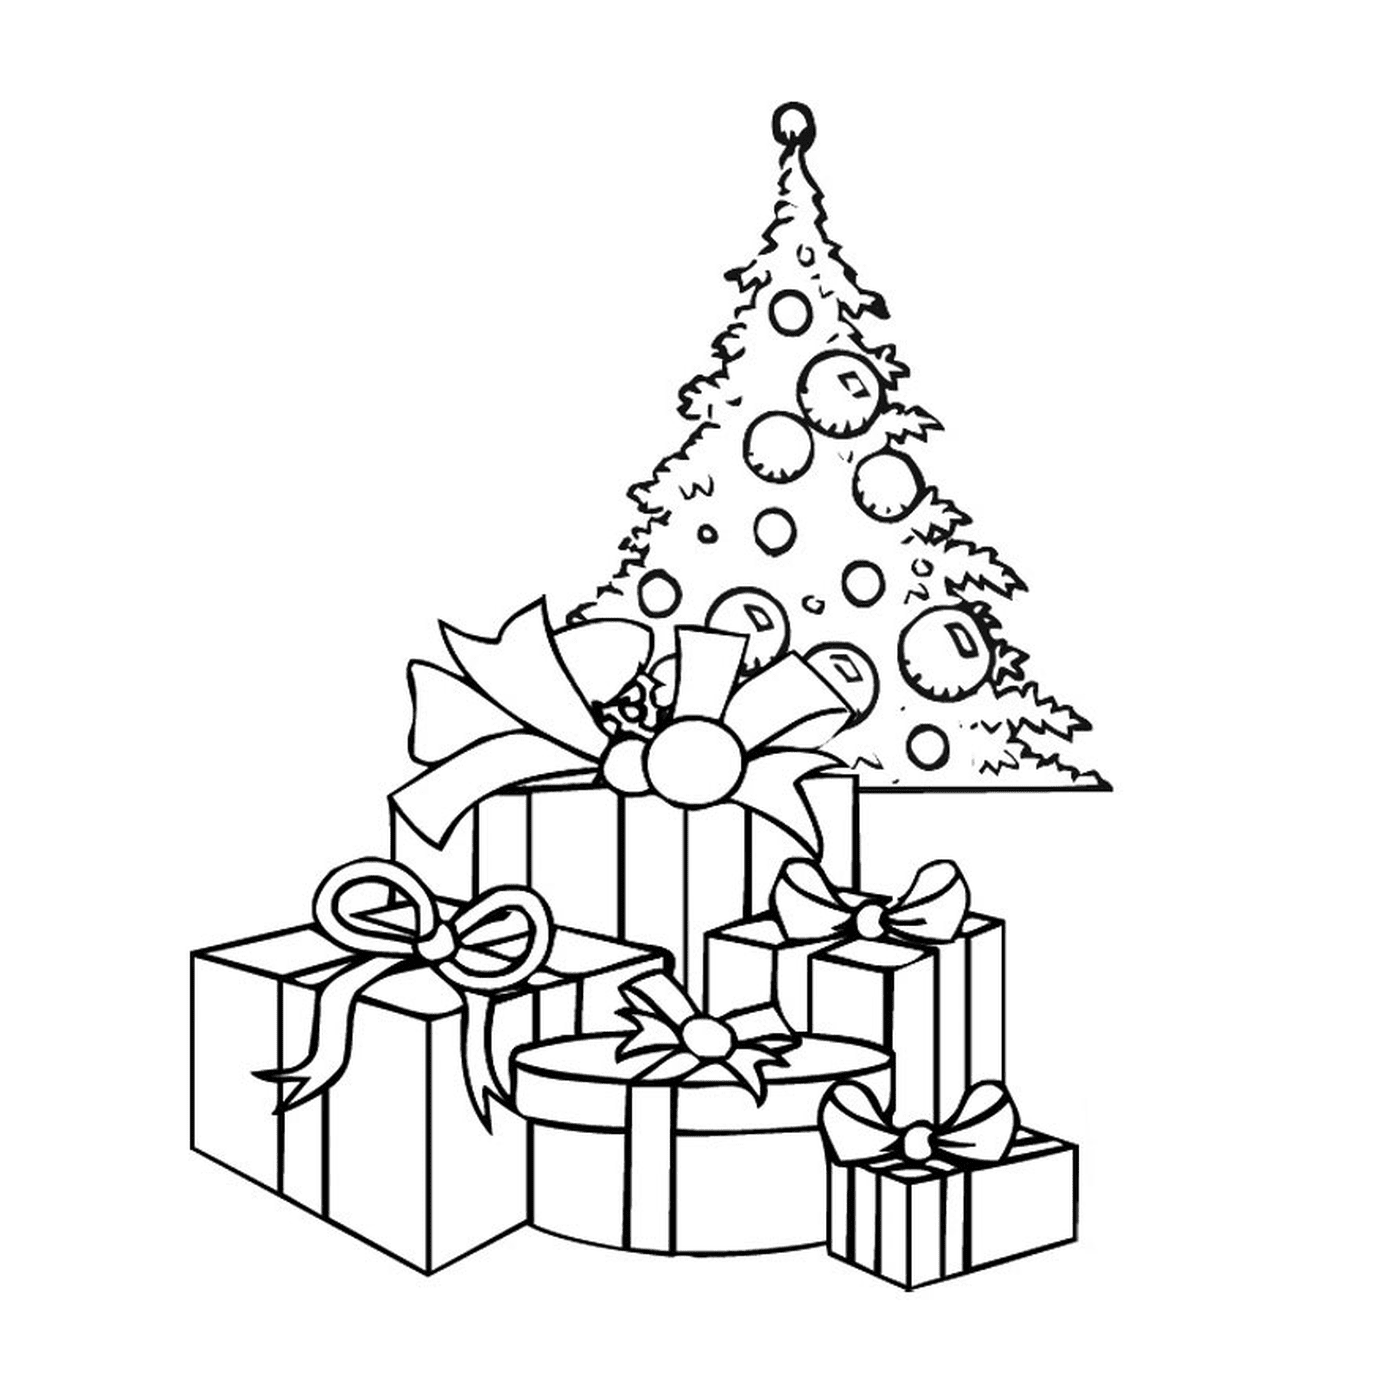  Un árbol de Navidad con regalos debajo 